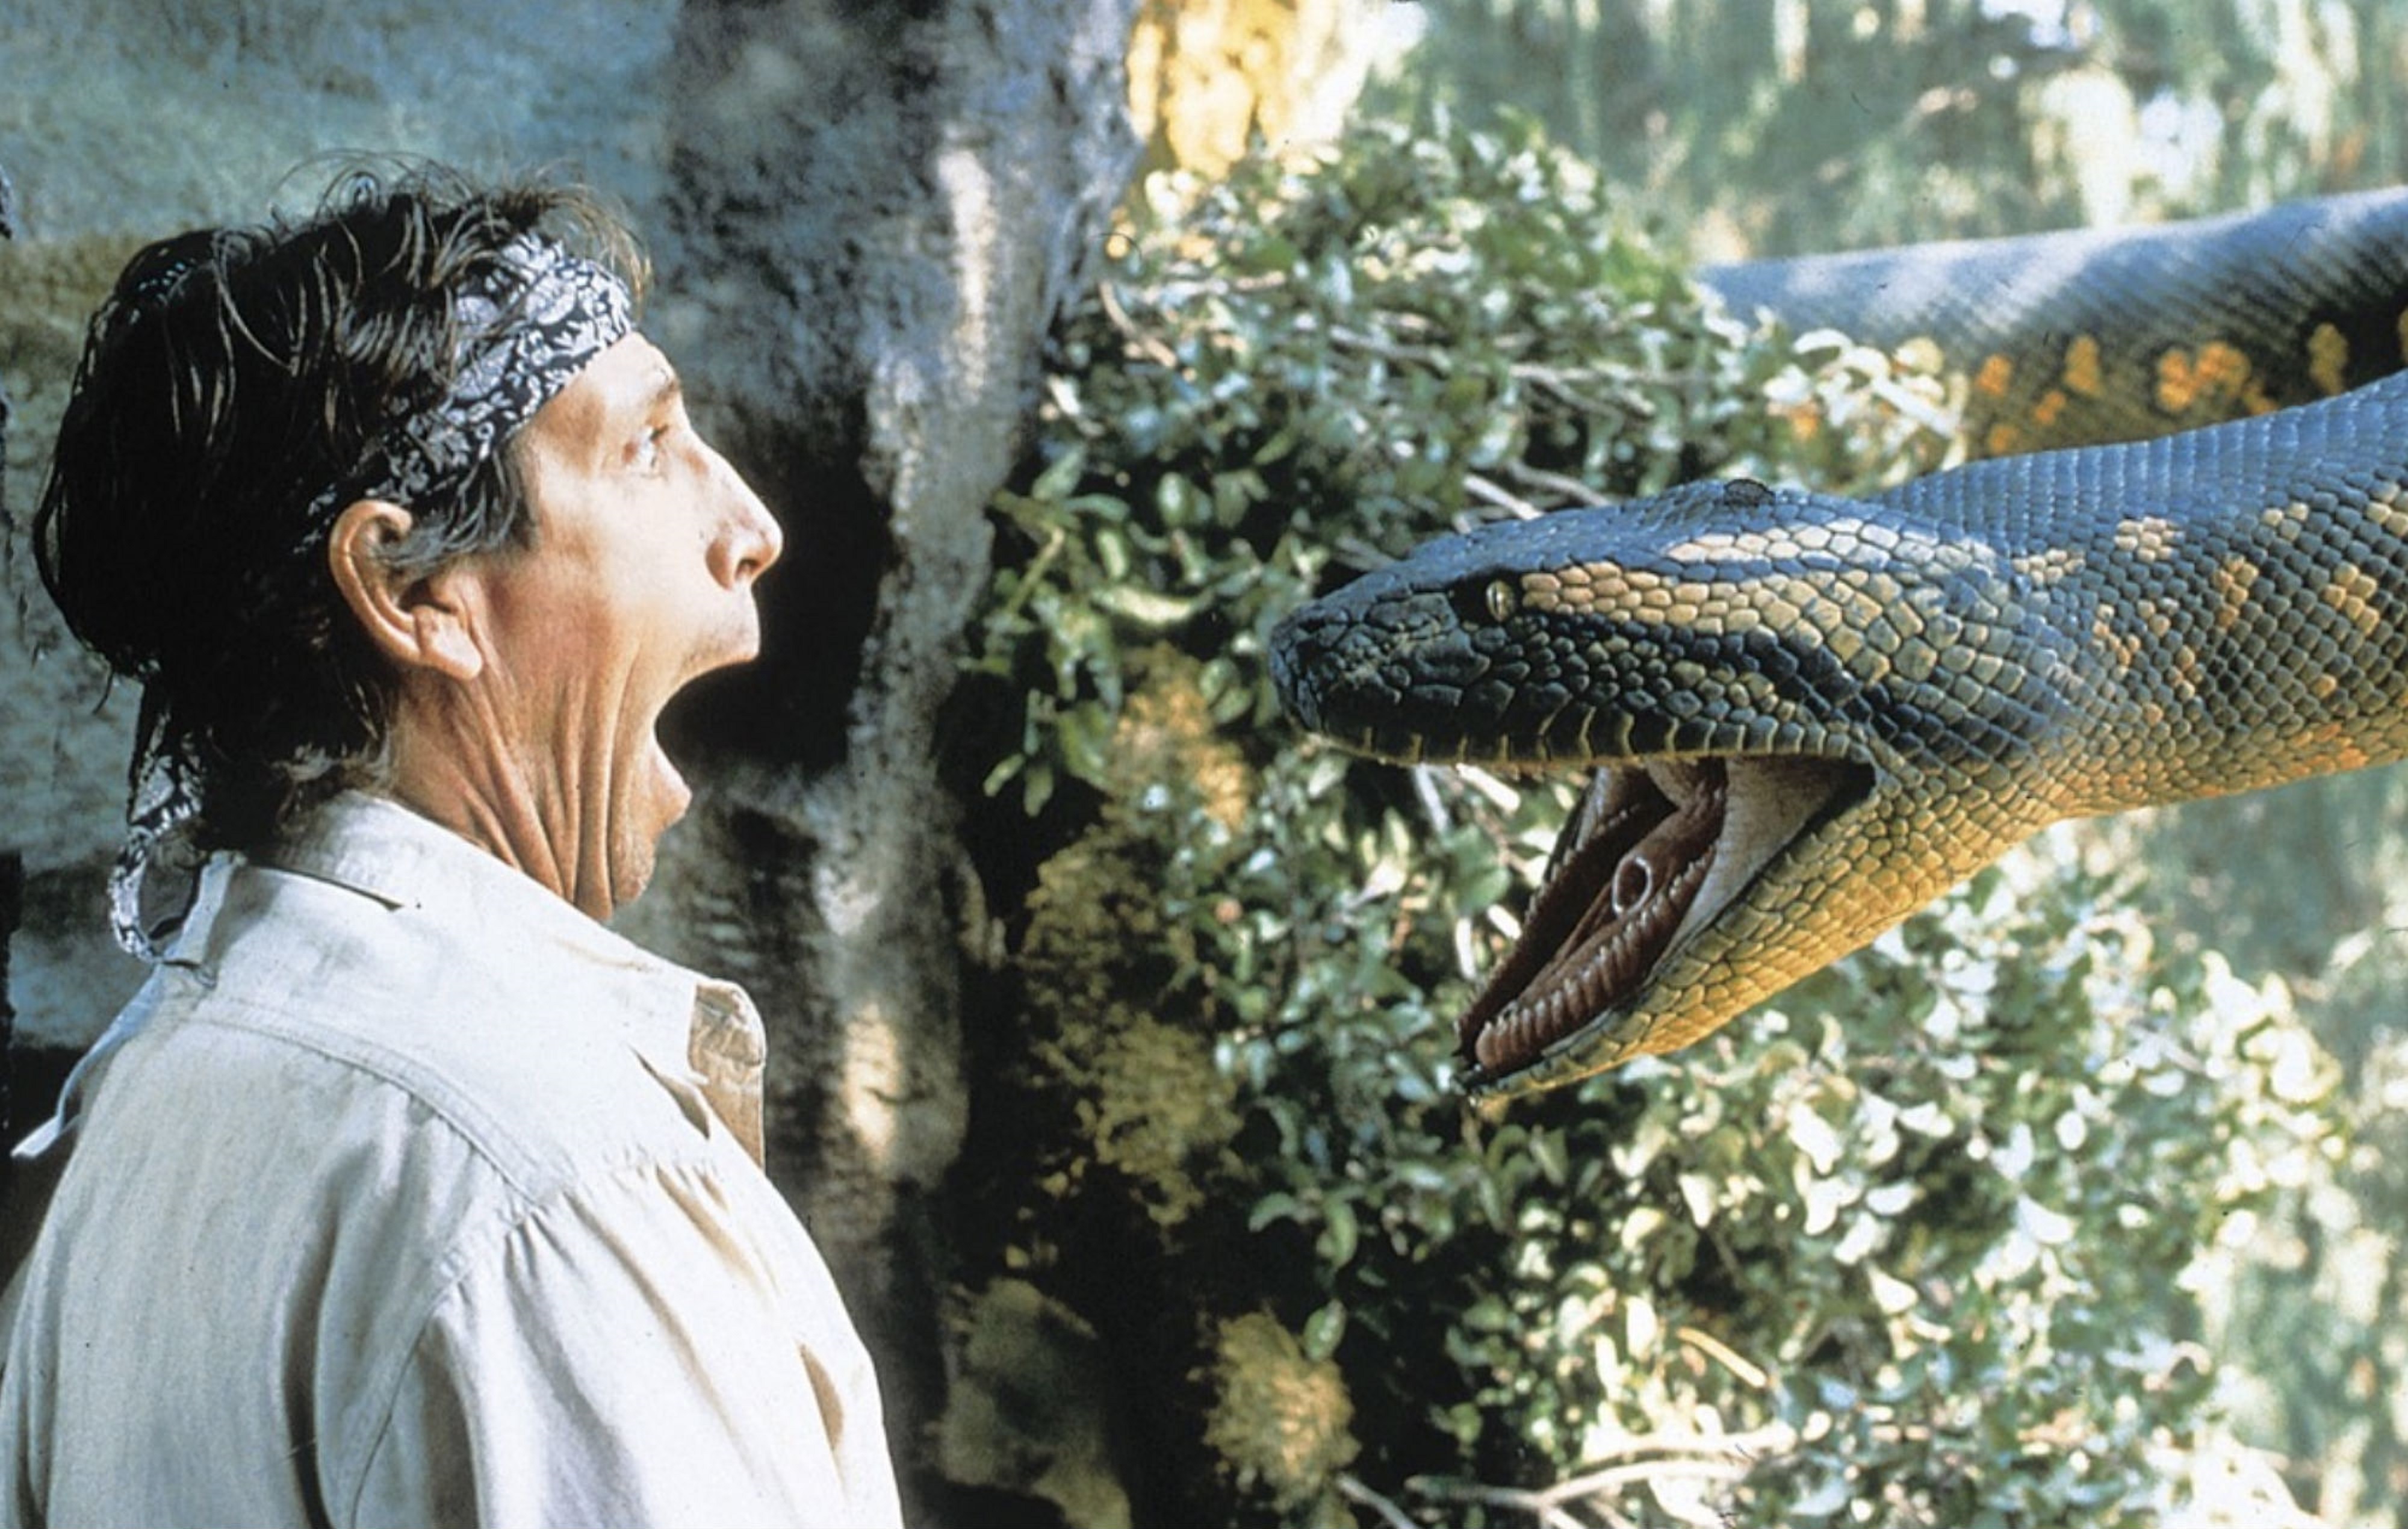 Нападение змеи. Джонатан Хайд Анаконда 1997.